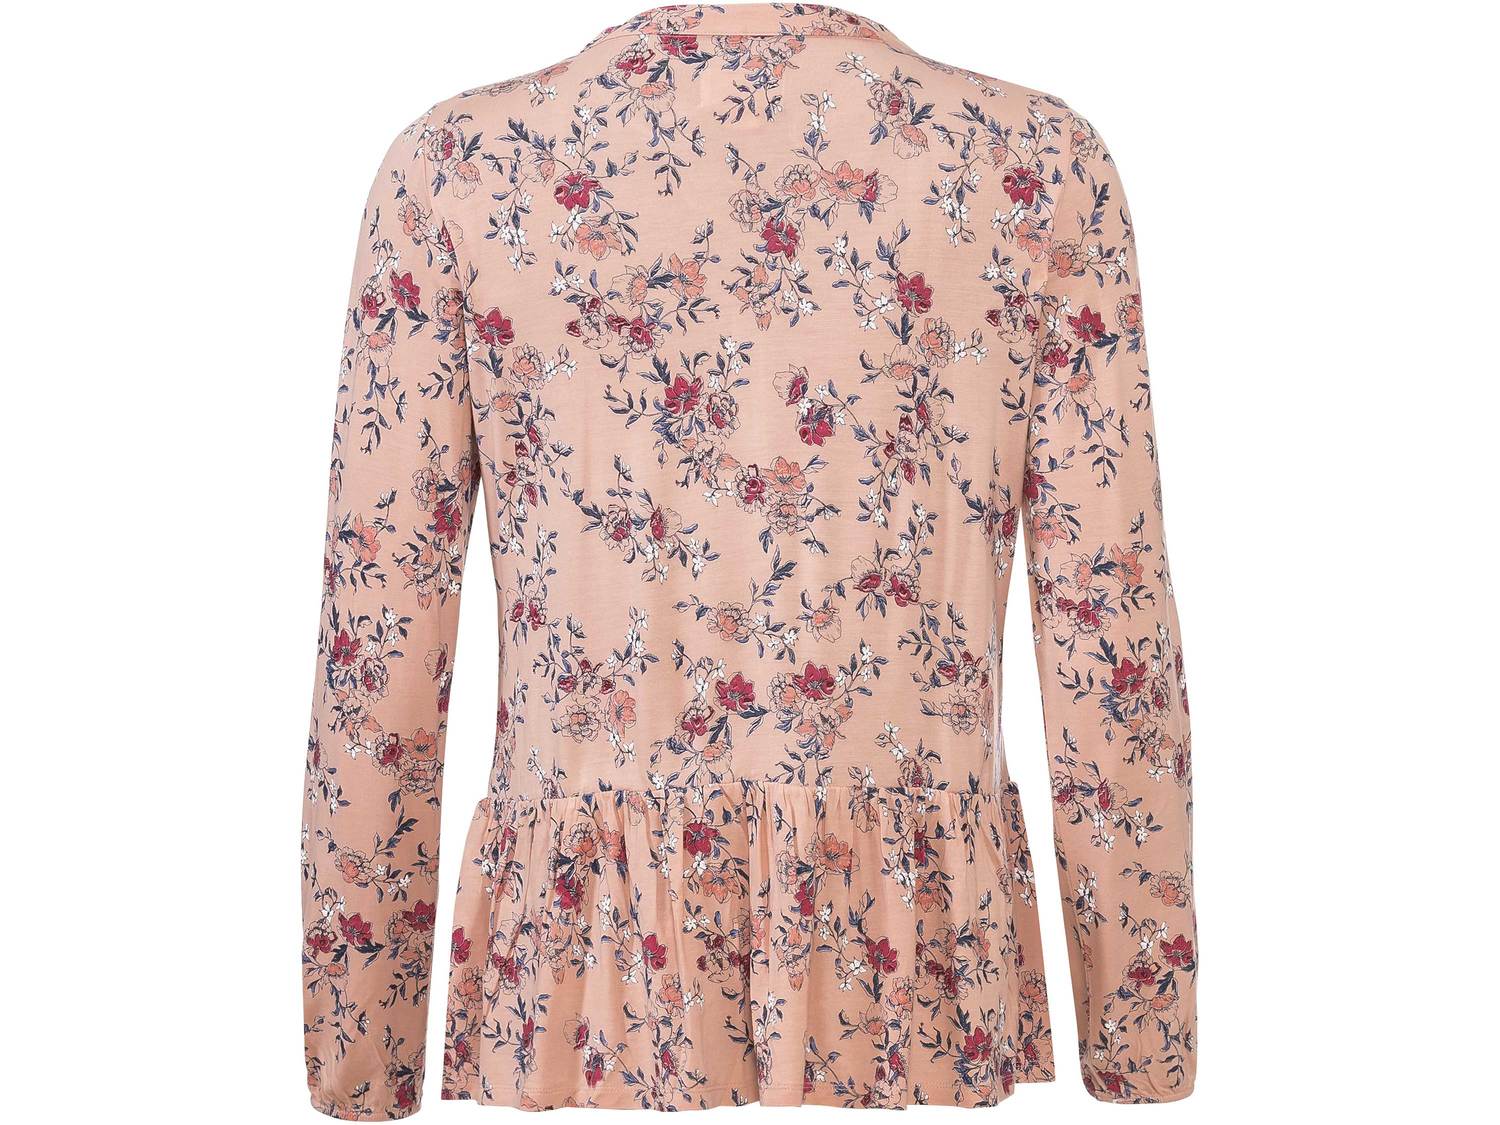 Bluzka damska z wiskozy Esmara, cena 39,99 PLN 
- romantyczne kwiatowe wzory 
- ...